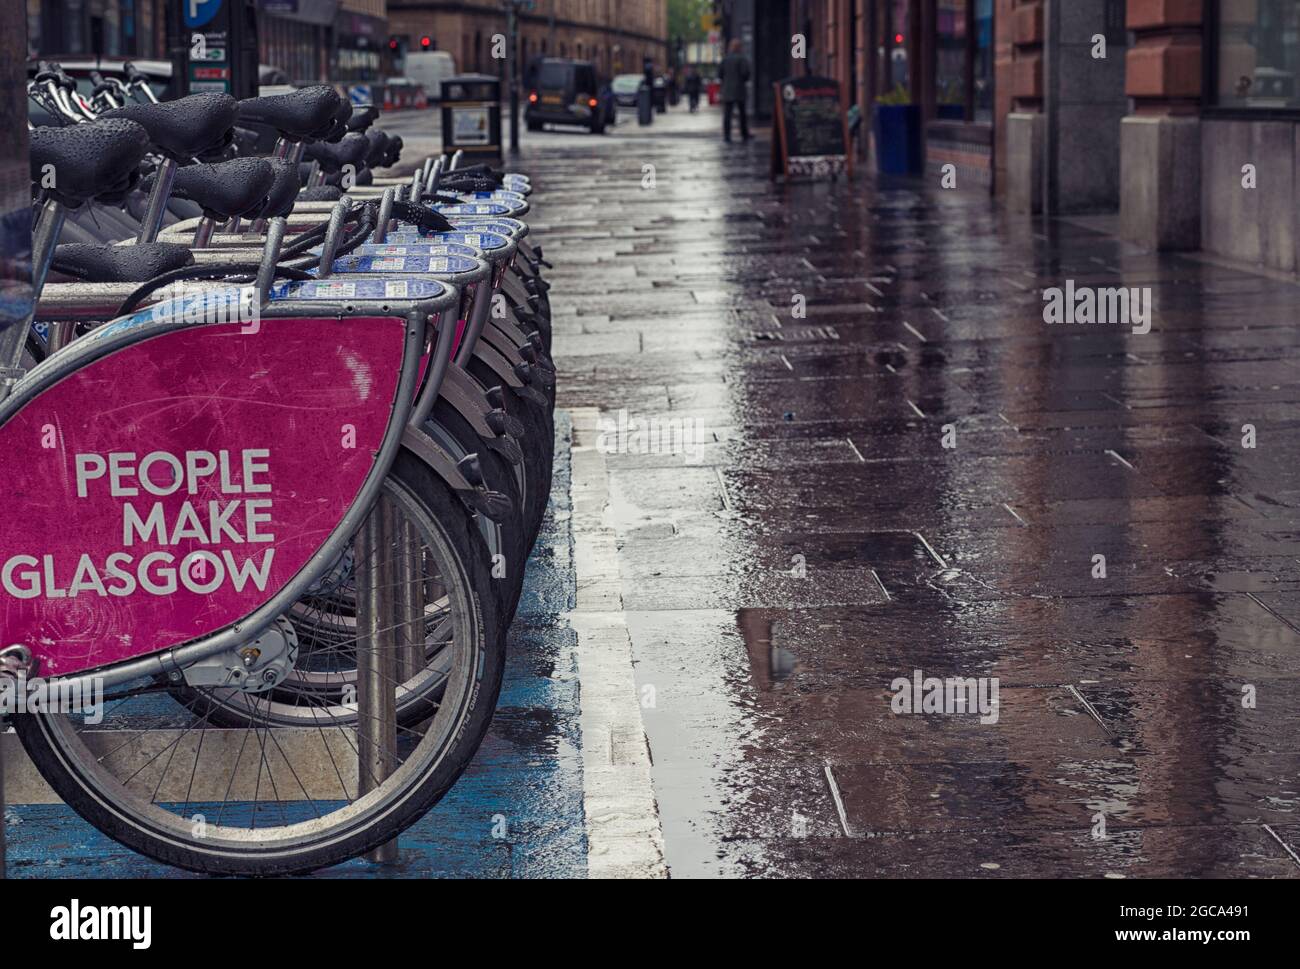 People Make Glasgow bike rack, Glasgow, Scotland Stock Photo